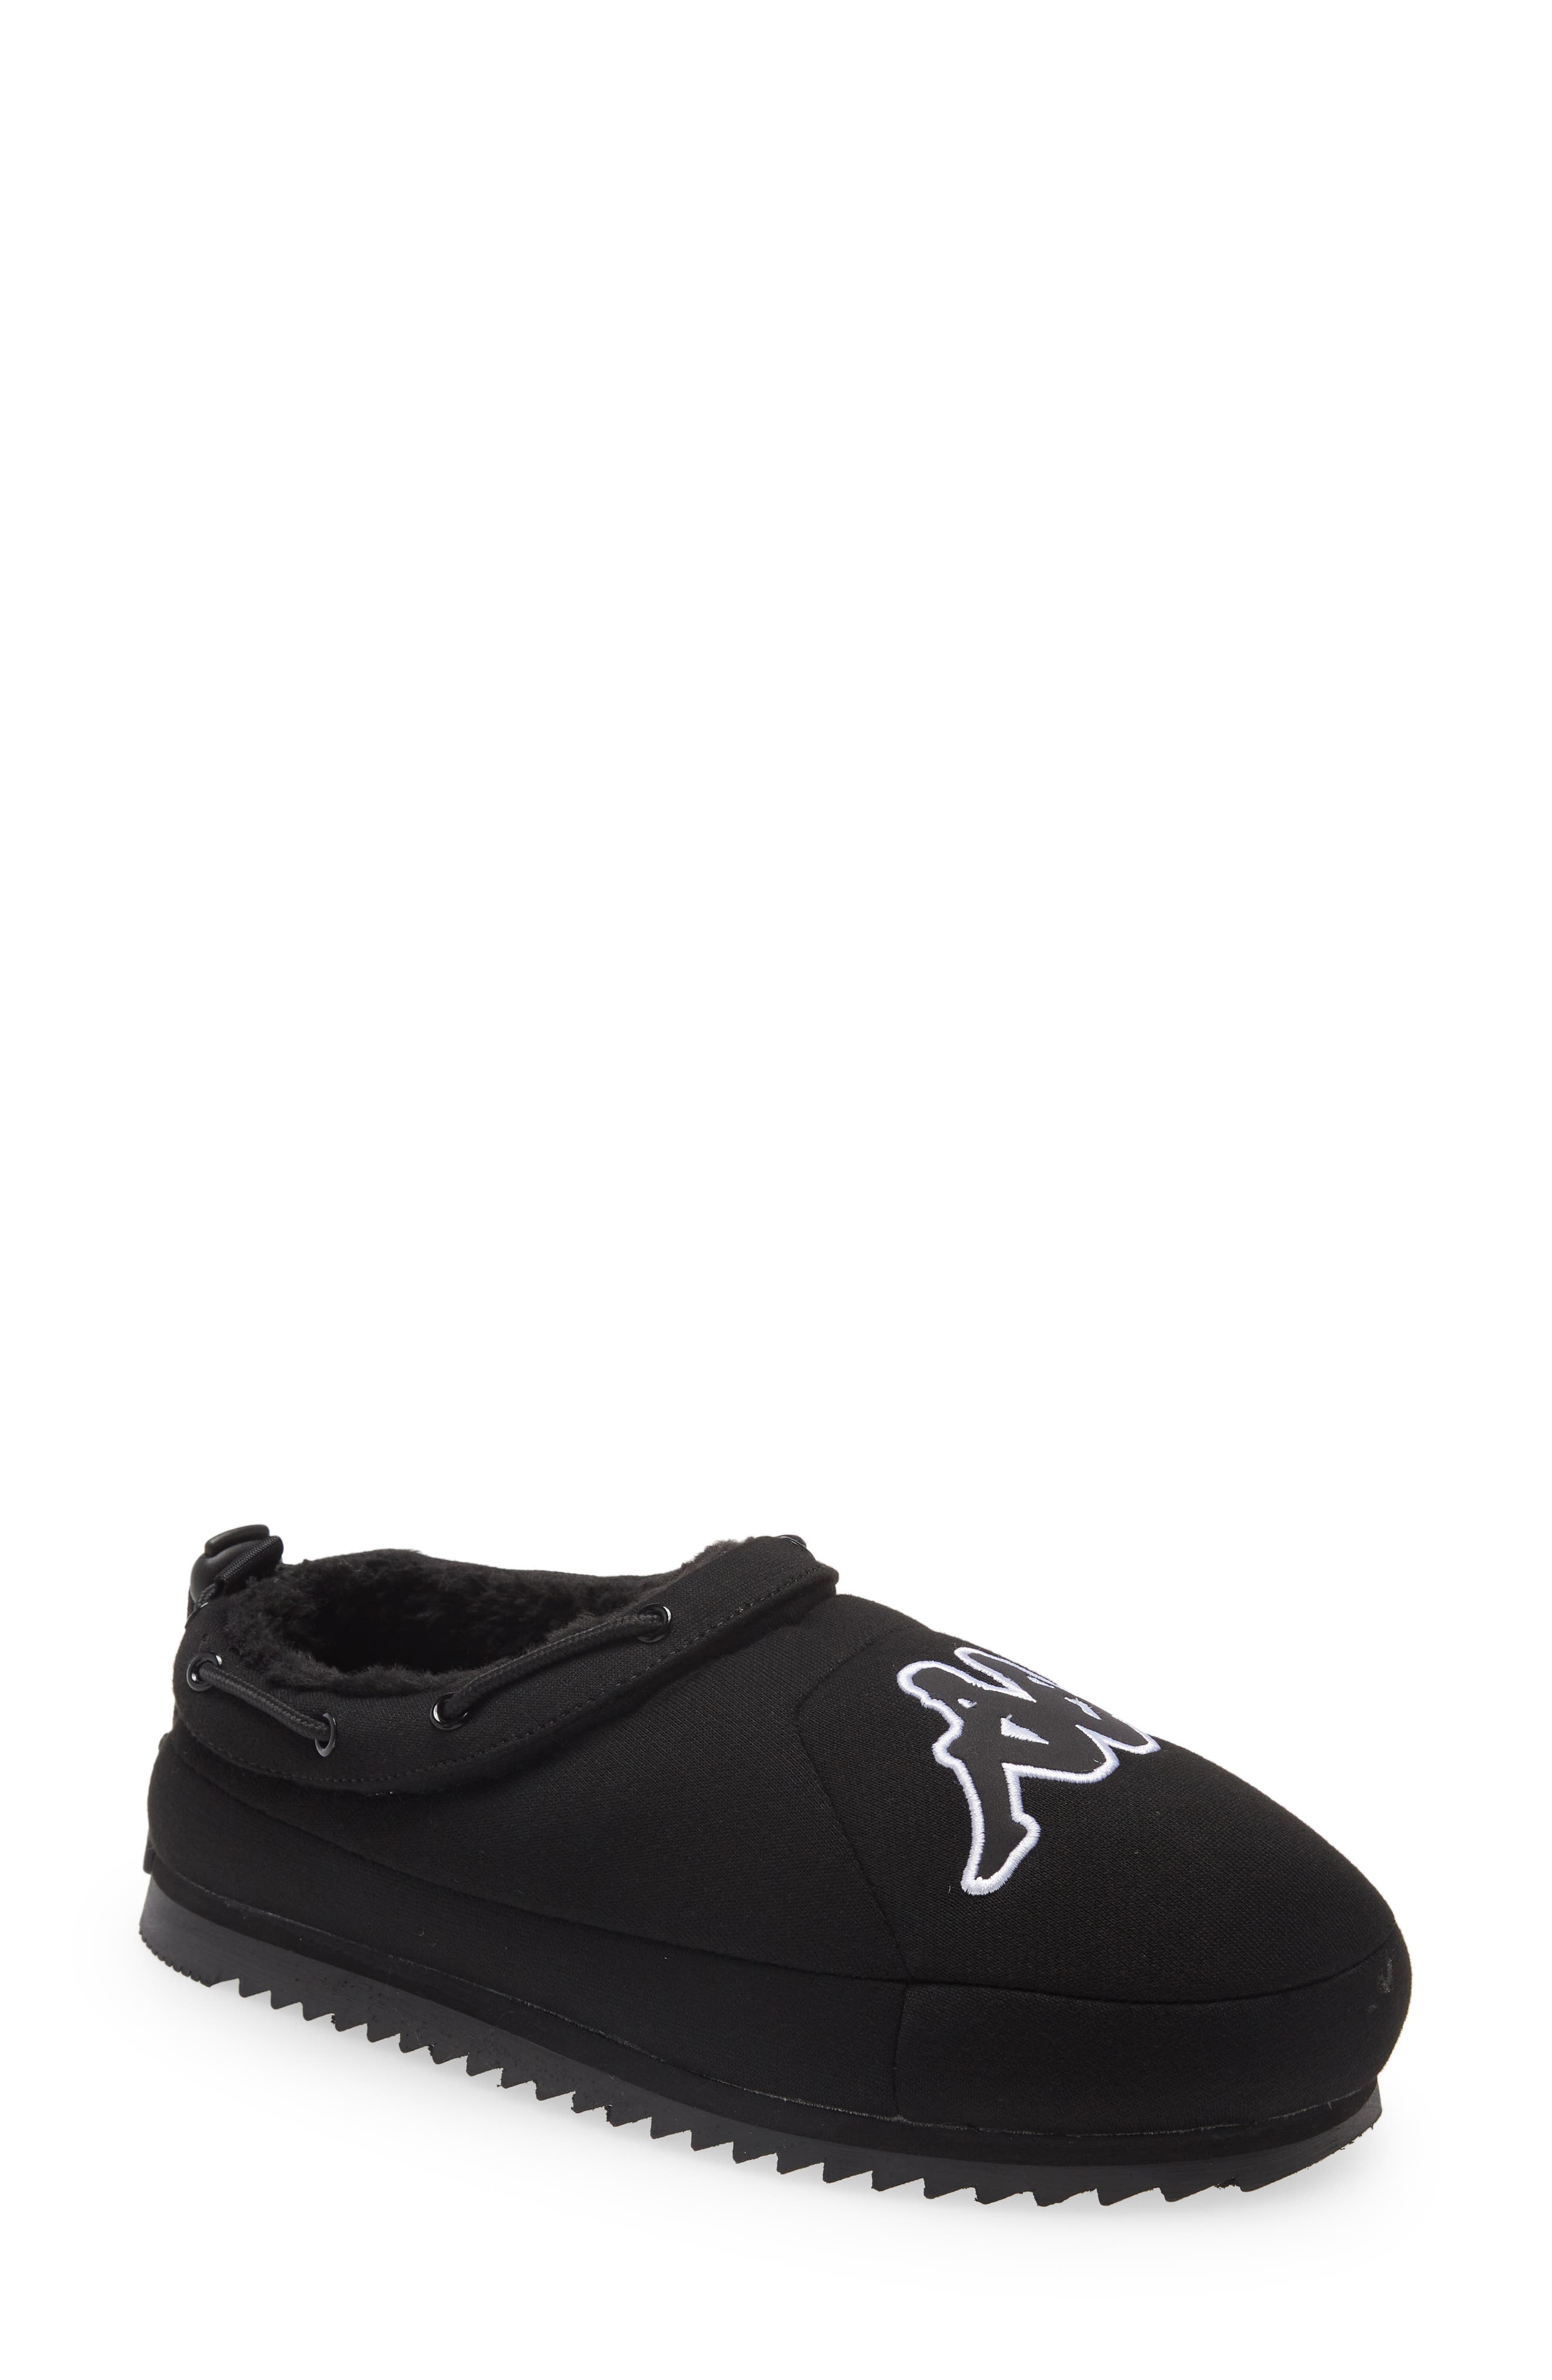 Kappa Tasin Logo Sneaker Mule in Black/White at Nordstrom, Size 8